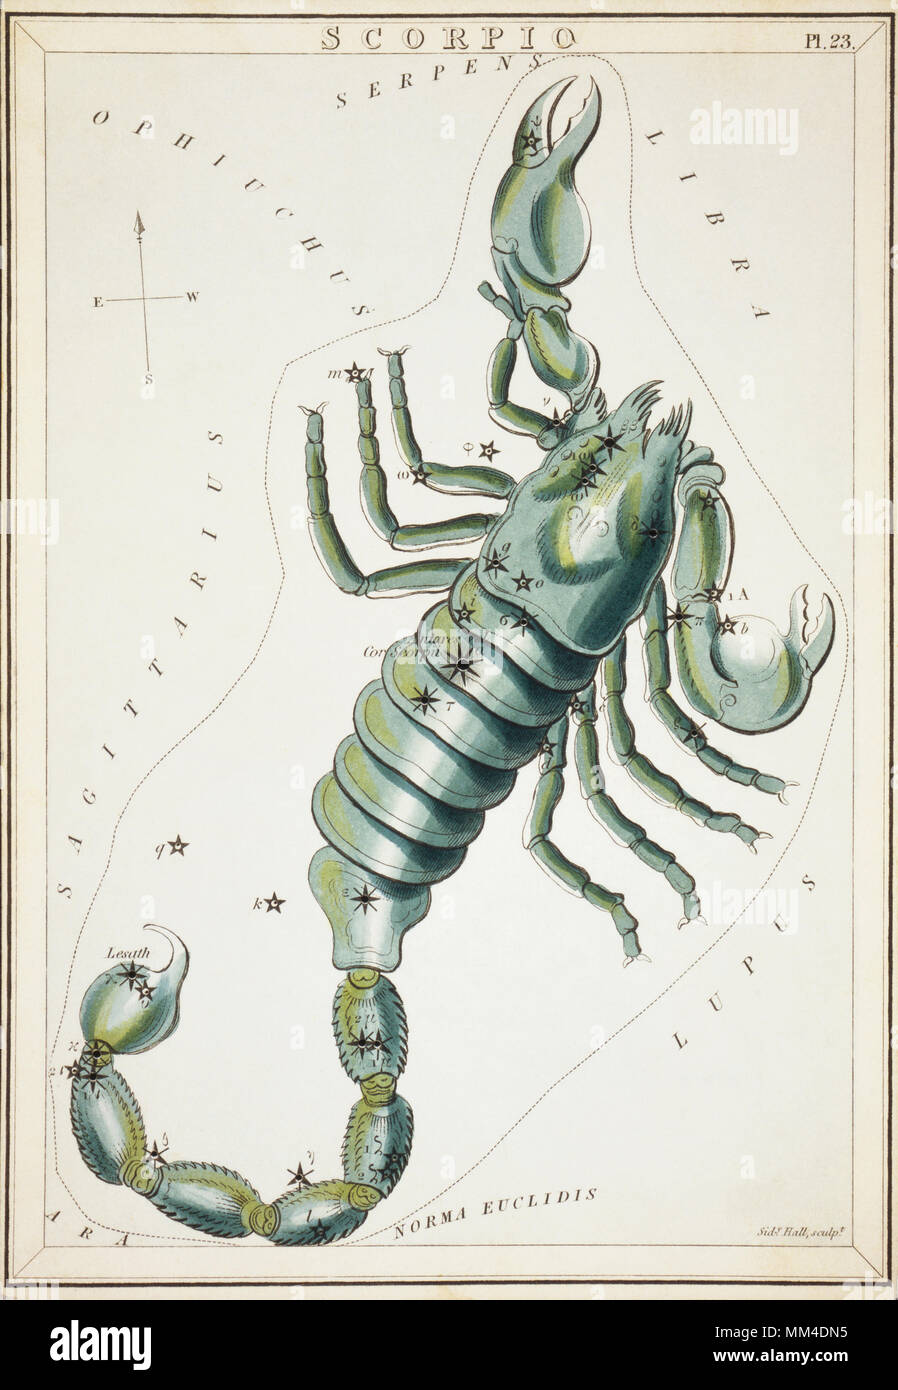 Skorpion. Karte Nummer 23 von Urania's Mirror, oder einen Blick auf den Himmel, eines der 32 astronomischen Star Chart Karten von Sidney Hall graviert und publshed 1824. Stockfoto